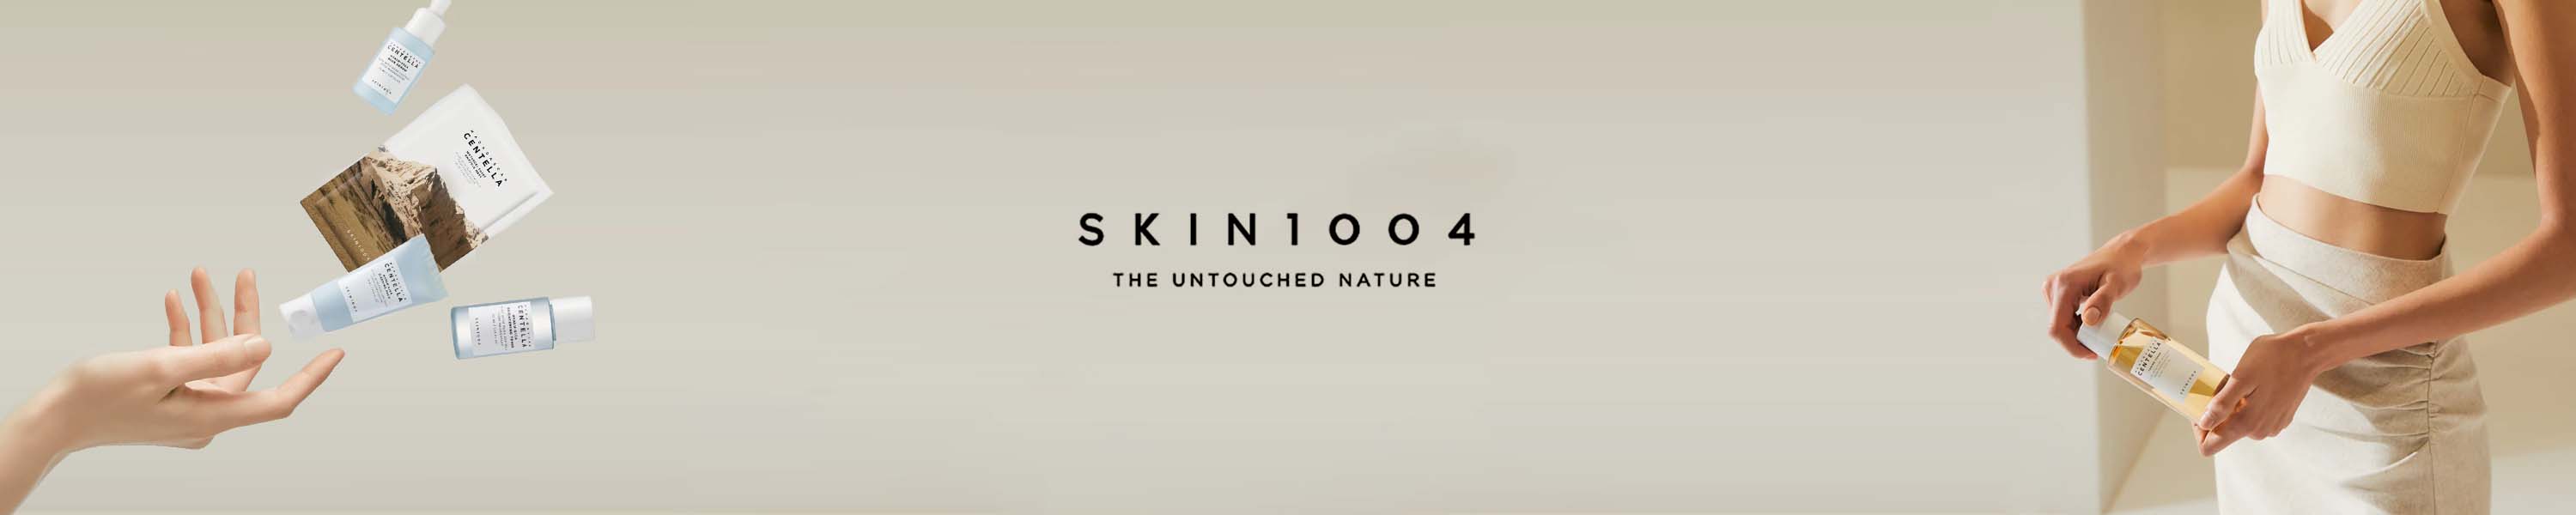 SKIN1004 - Best Skin Care | Fitaminat